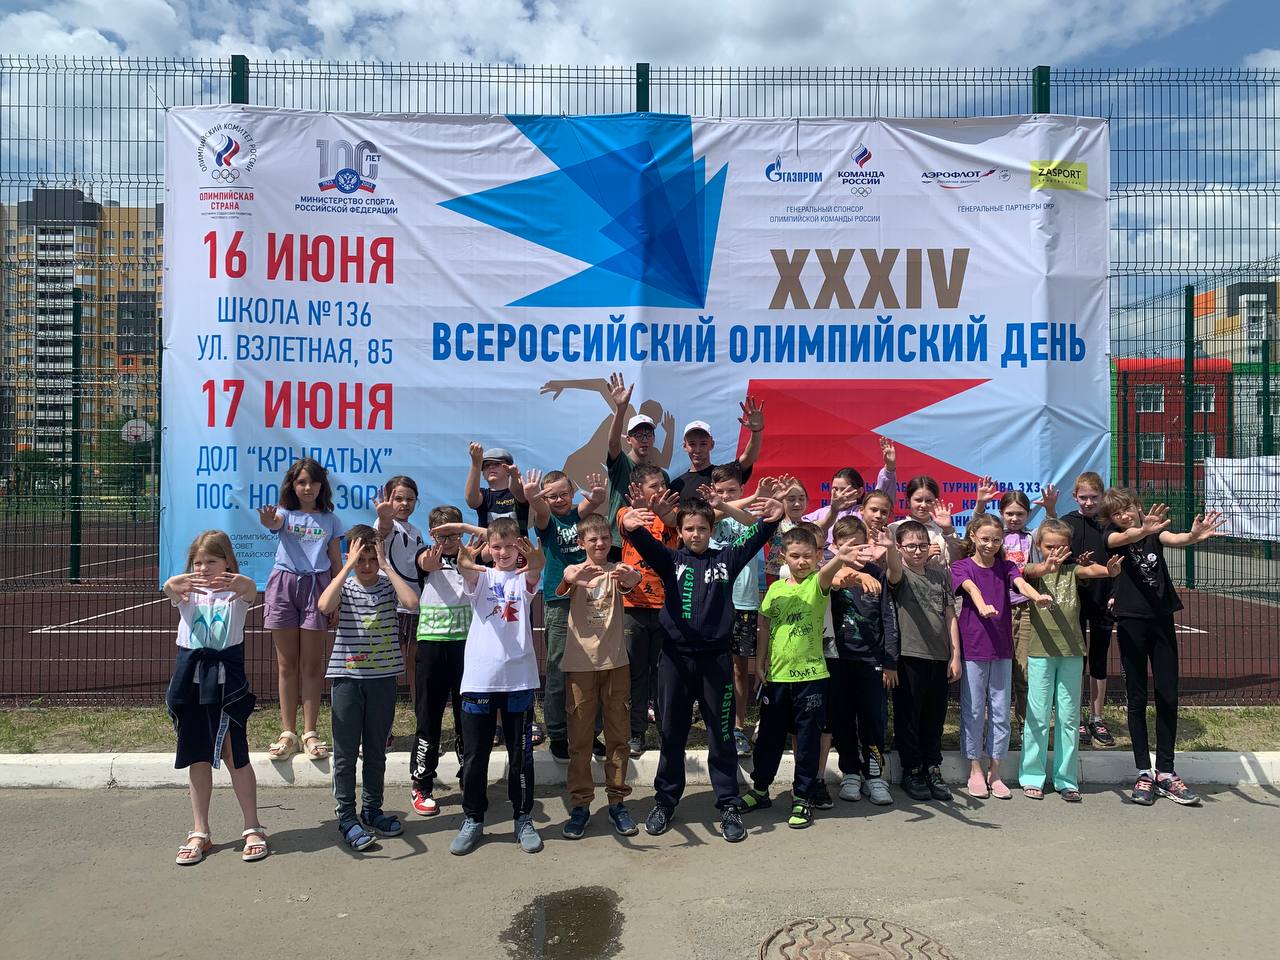 Сегодня на базе нашей школы прошел спортивный праздник, посвященный «Всероссийскому олимпийскому дню».